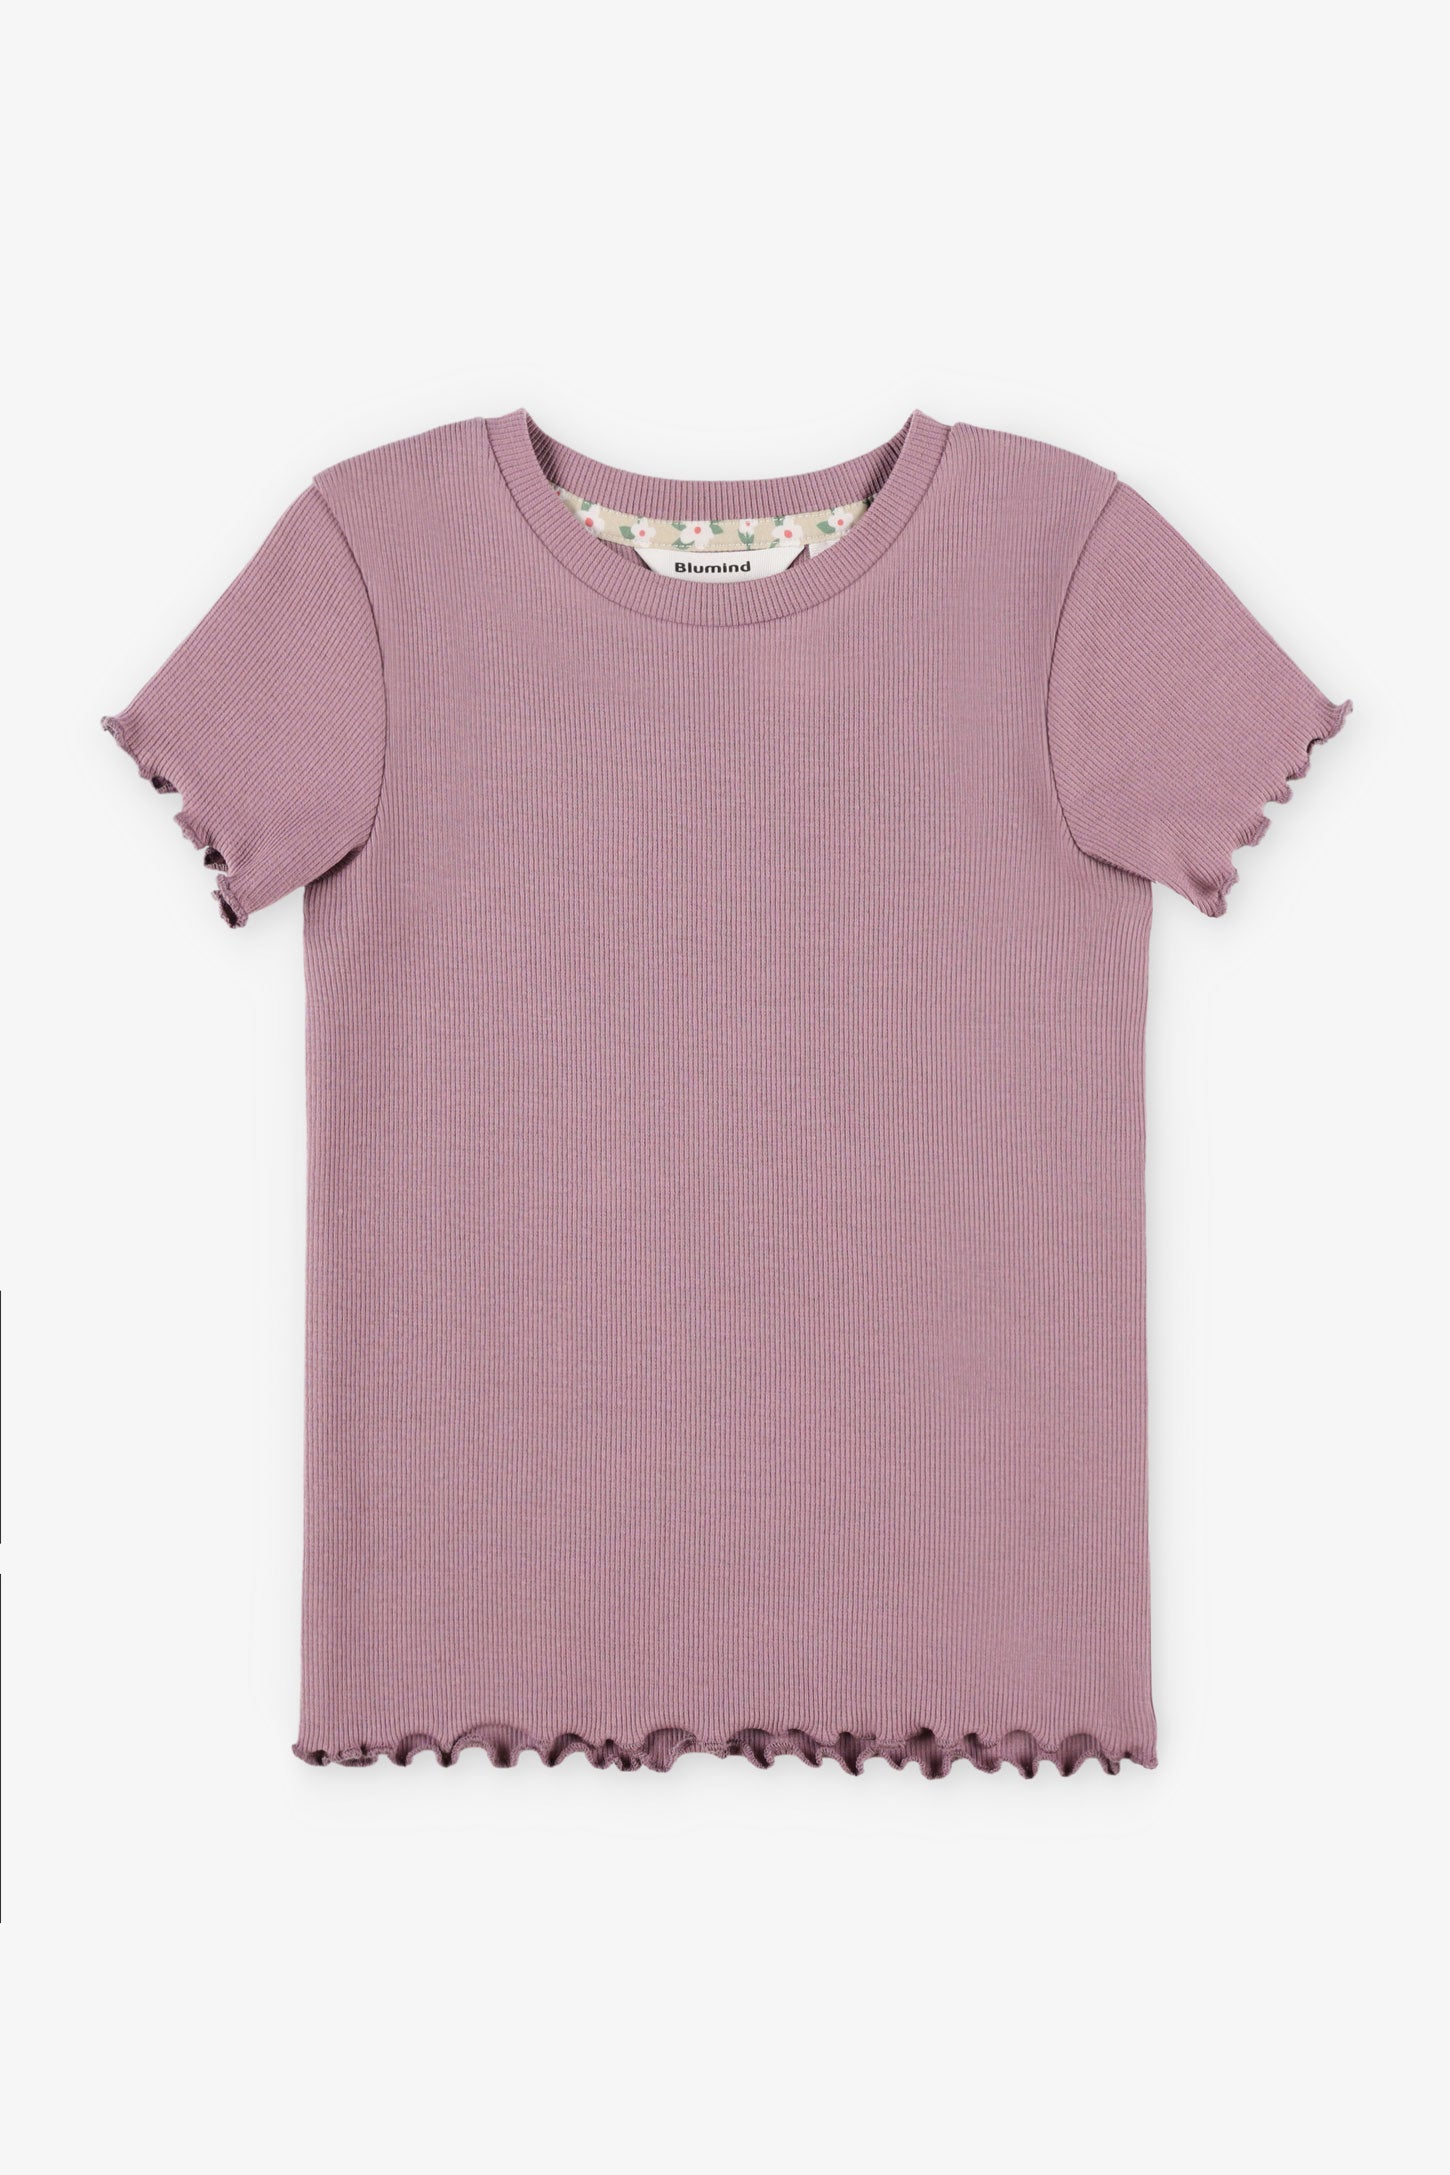 T-shirt côtelé finitions laitue - Enfant fille && MAUVE